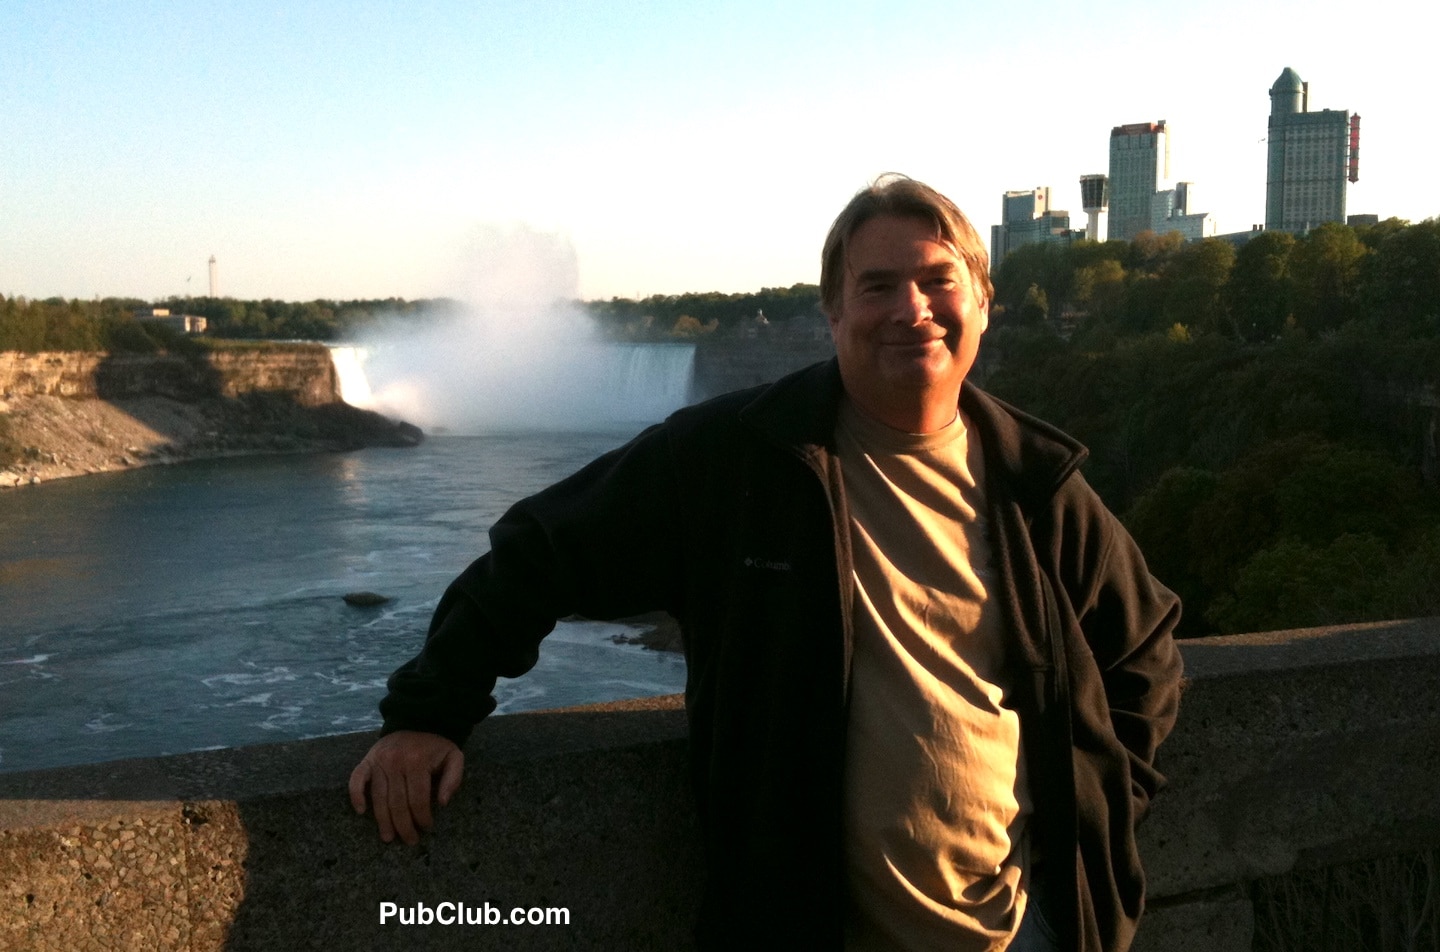 PubClub.com travel blogger at Niagara Falls Canada